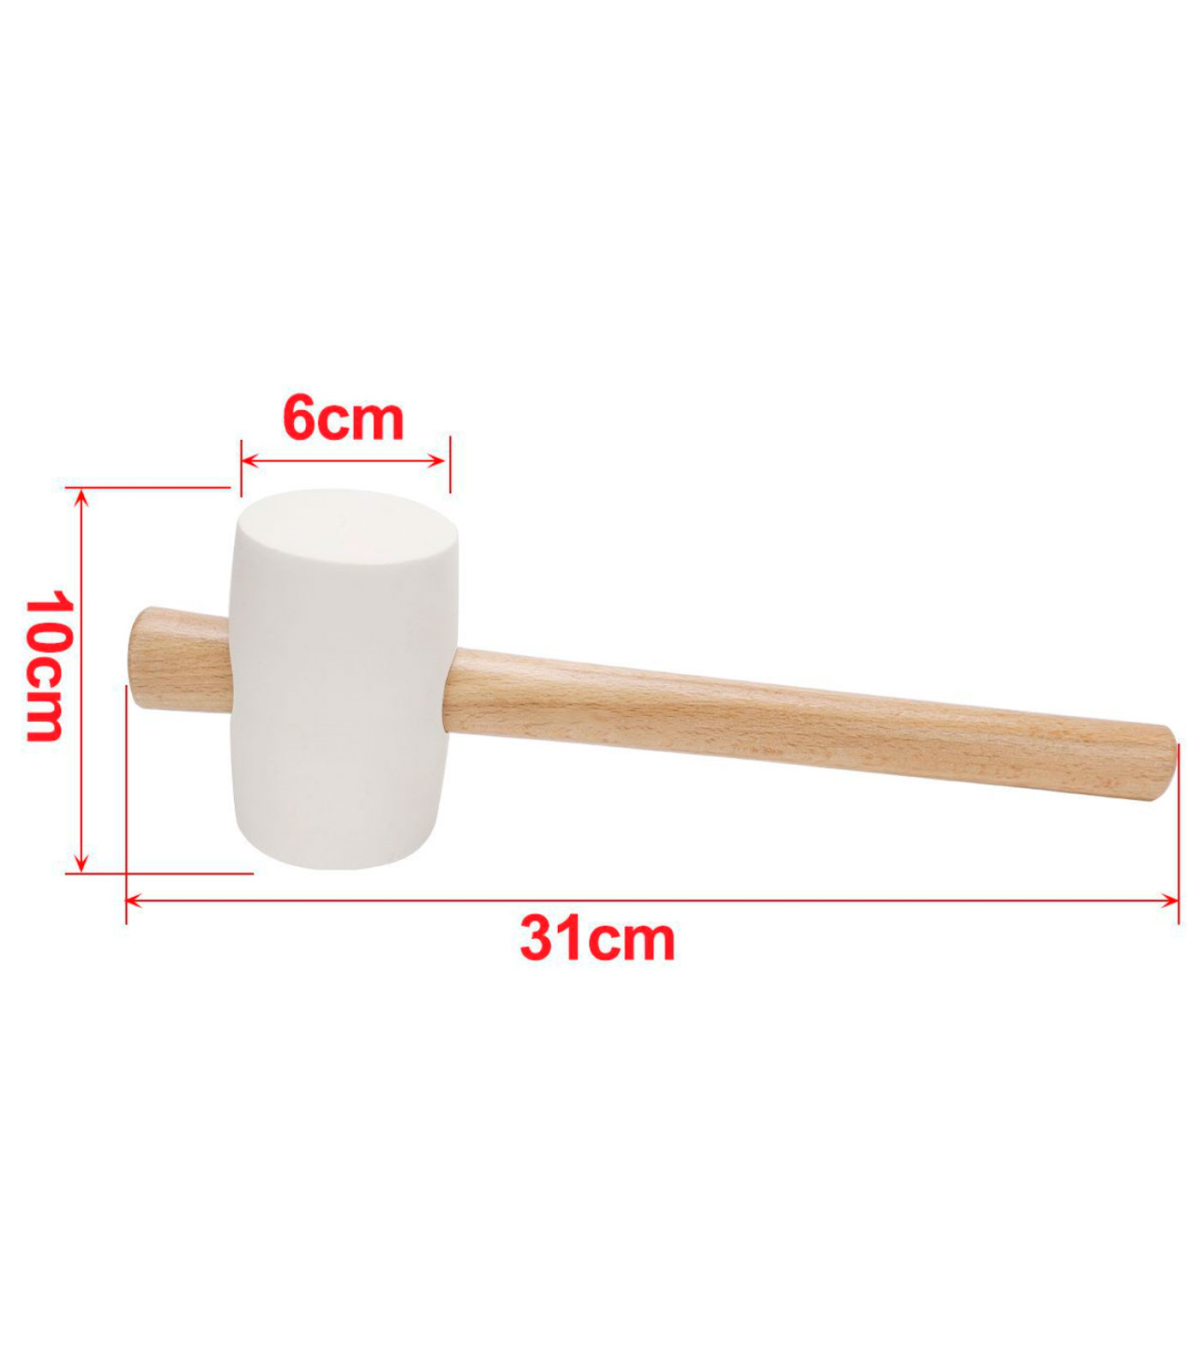 Tradineur - Martillo de goma de 500 g - Longitud 31 cm - Mango de madera -  Ideal para obras de bricolaje y carpintería (Blanco)